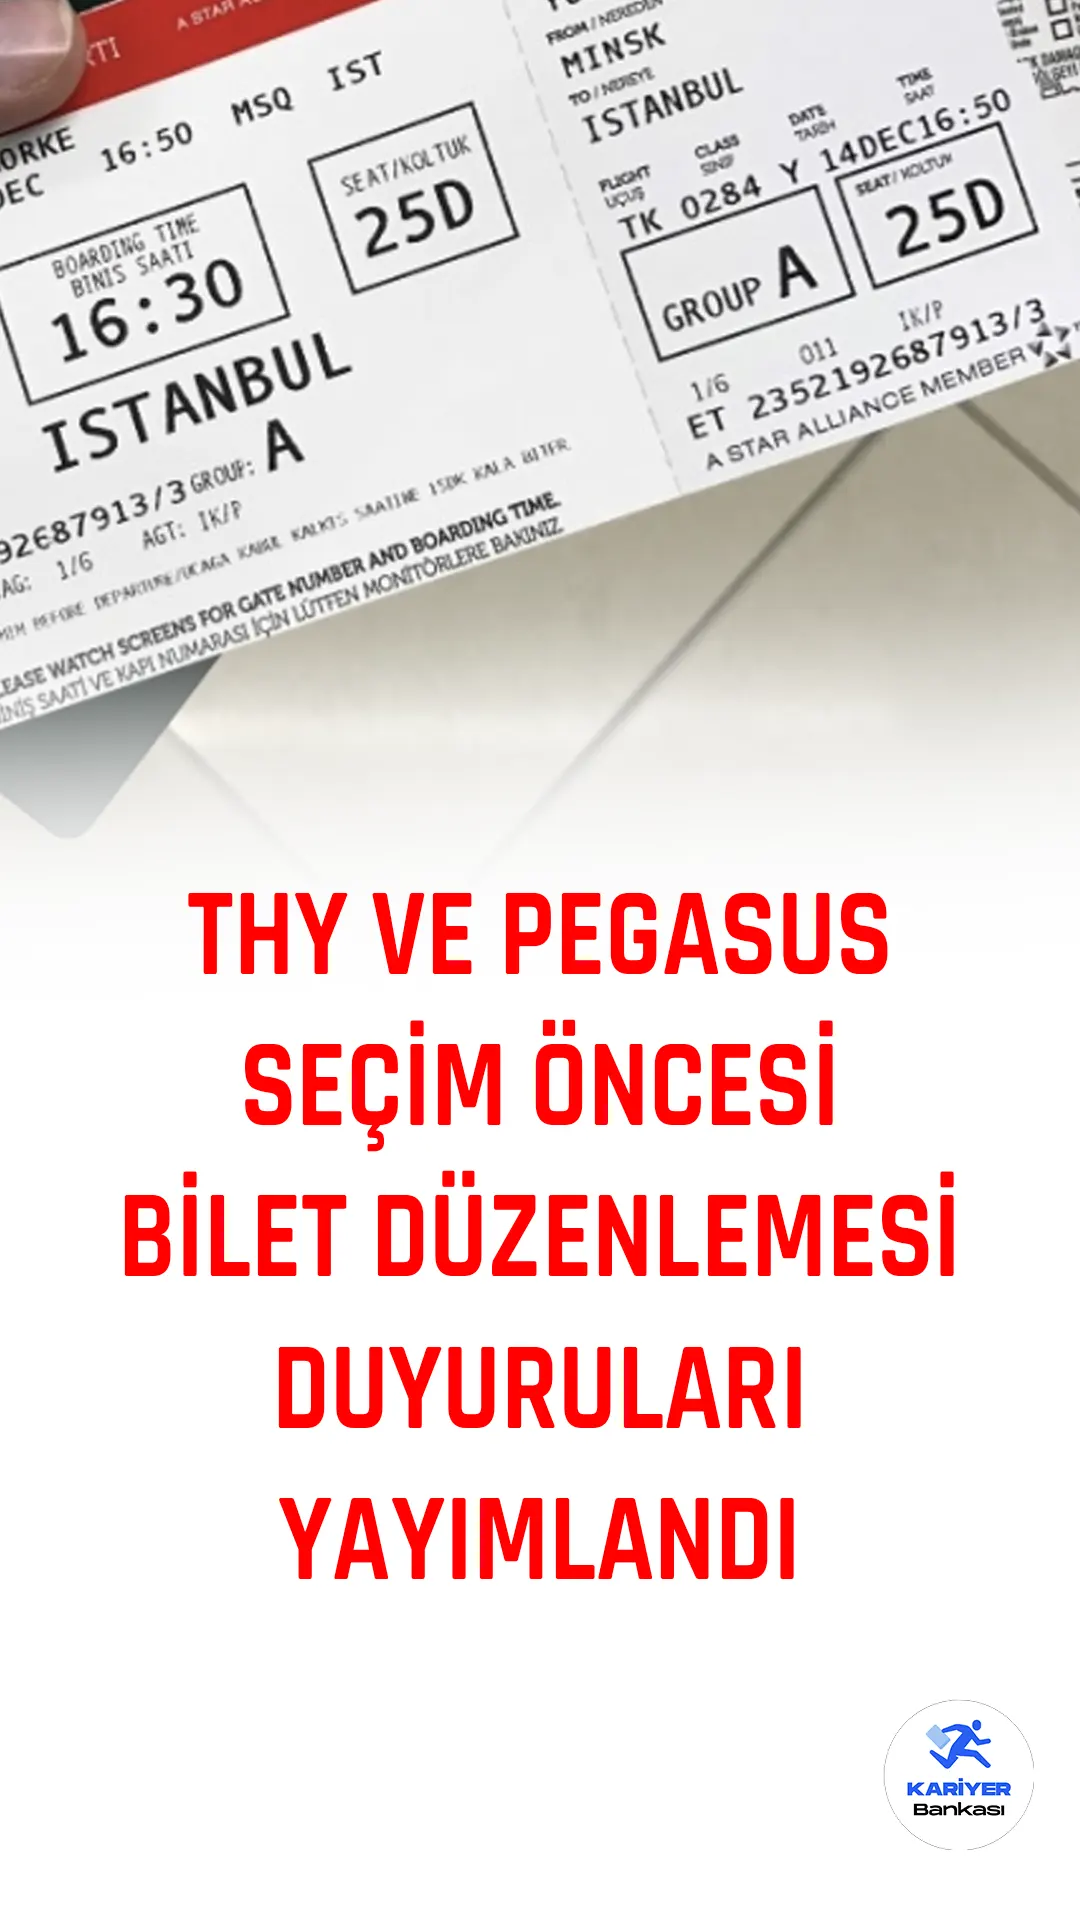 Türk Hava Yolları (THY) ve Pegasus Hava Yolları, 14 Mayıs'ta yapılacak Cumhurbaşkanlığı ve milletvekili seçimleri nedeniyle Türk vatandaşı yolcuların oy kullanma süreçlerini kolaylaştırmak için bilet iade talepleri ve rezervasyon değişiklik koşullarında bazı düzenlemelere gideceklerini duyurdu.